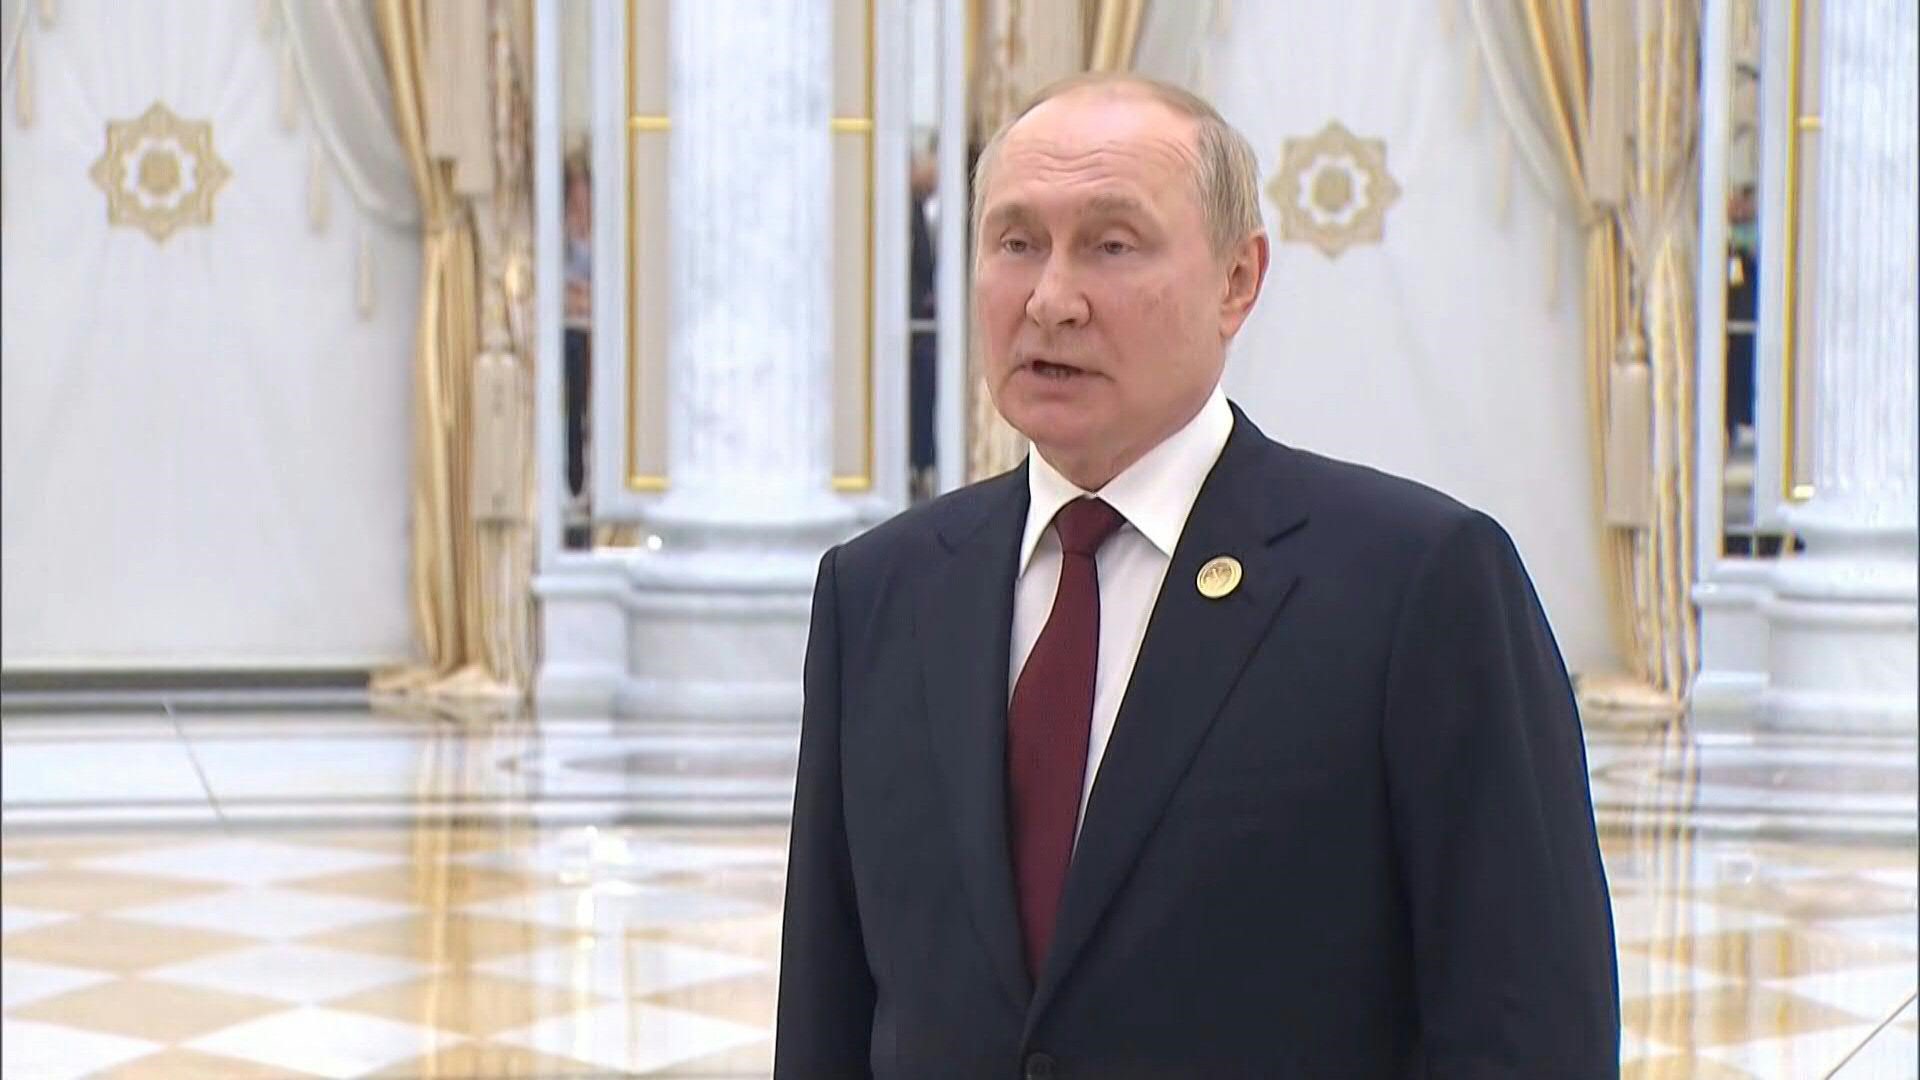 El presidente de Rusia, Vladimir Putin, denunció el miércoles las "ambiciones imperiales" de la OTAN que busca, según dijo, afirmar su "hegemonía" a través del conflicto en Ucrania.